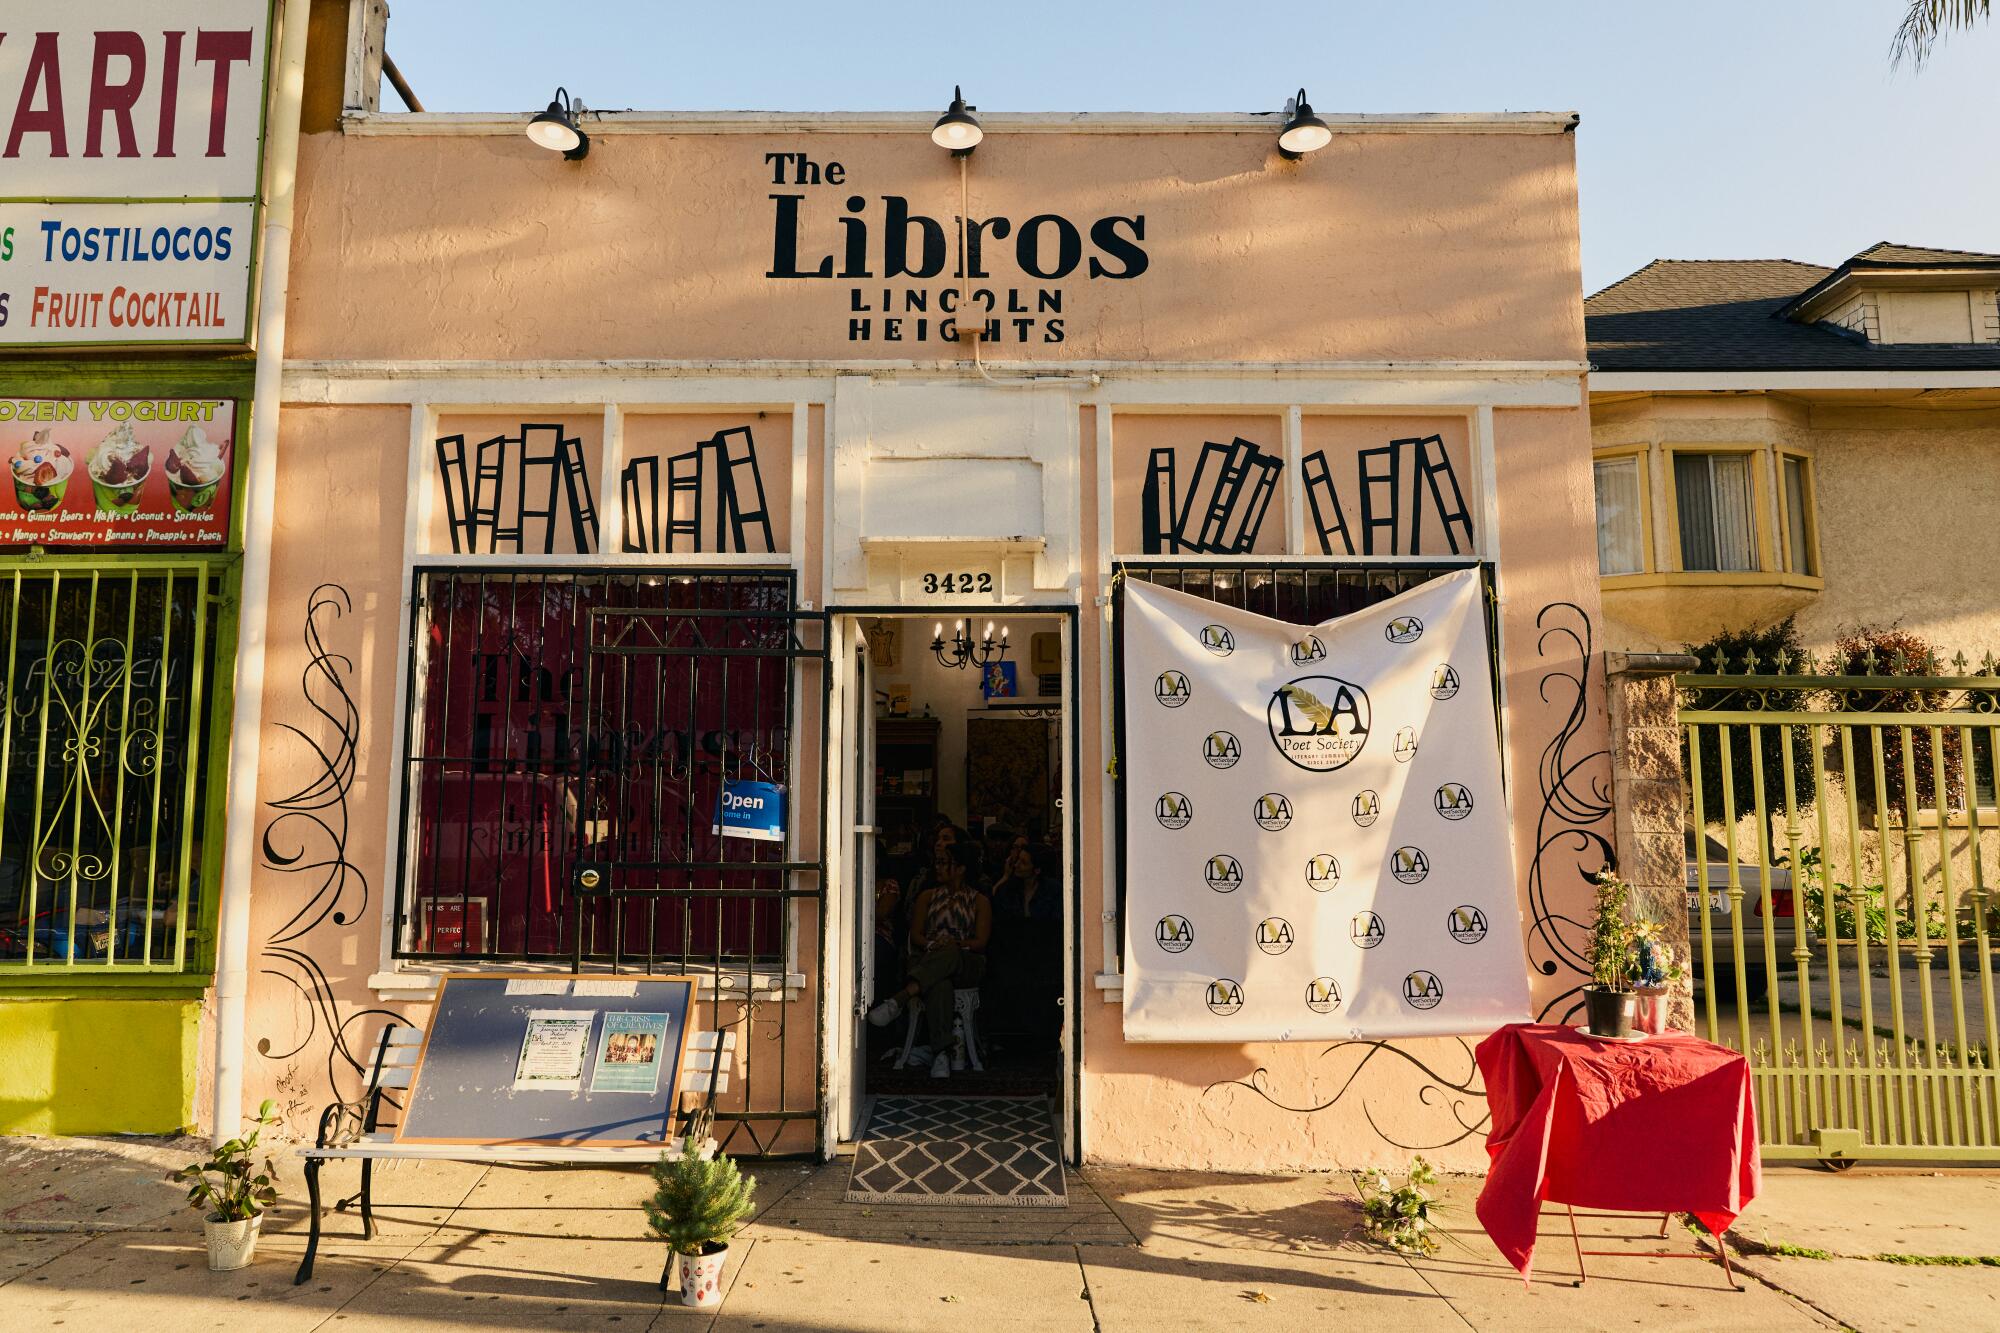 The Libros bookshop.